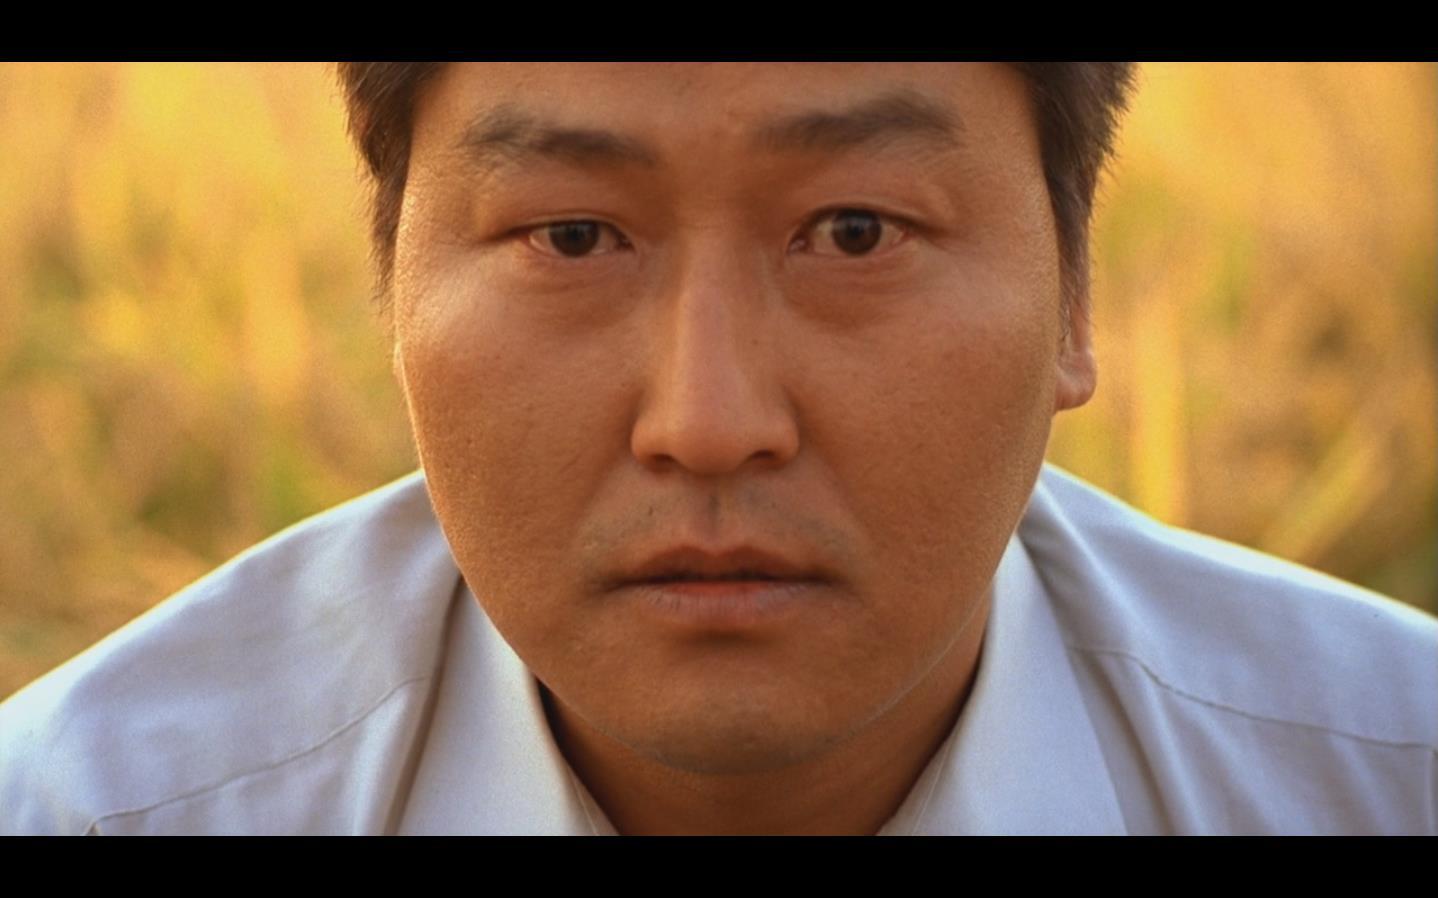 韩国电影《杀人回忆》的真正价值在哪里?